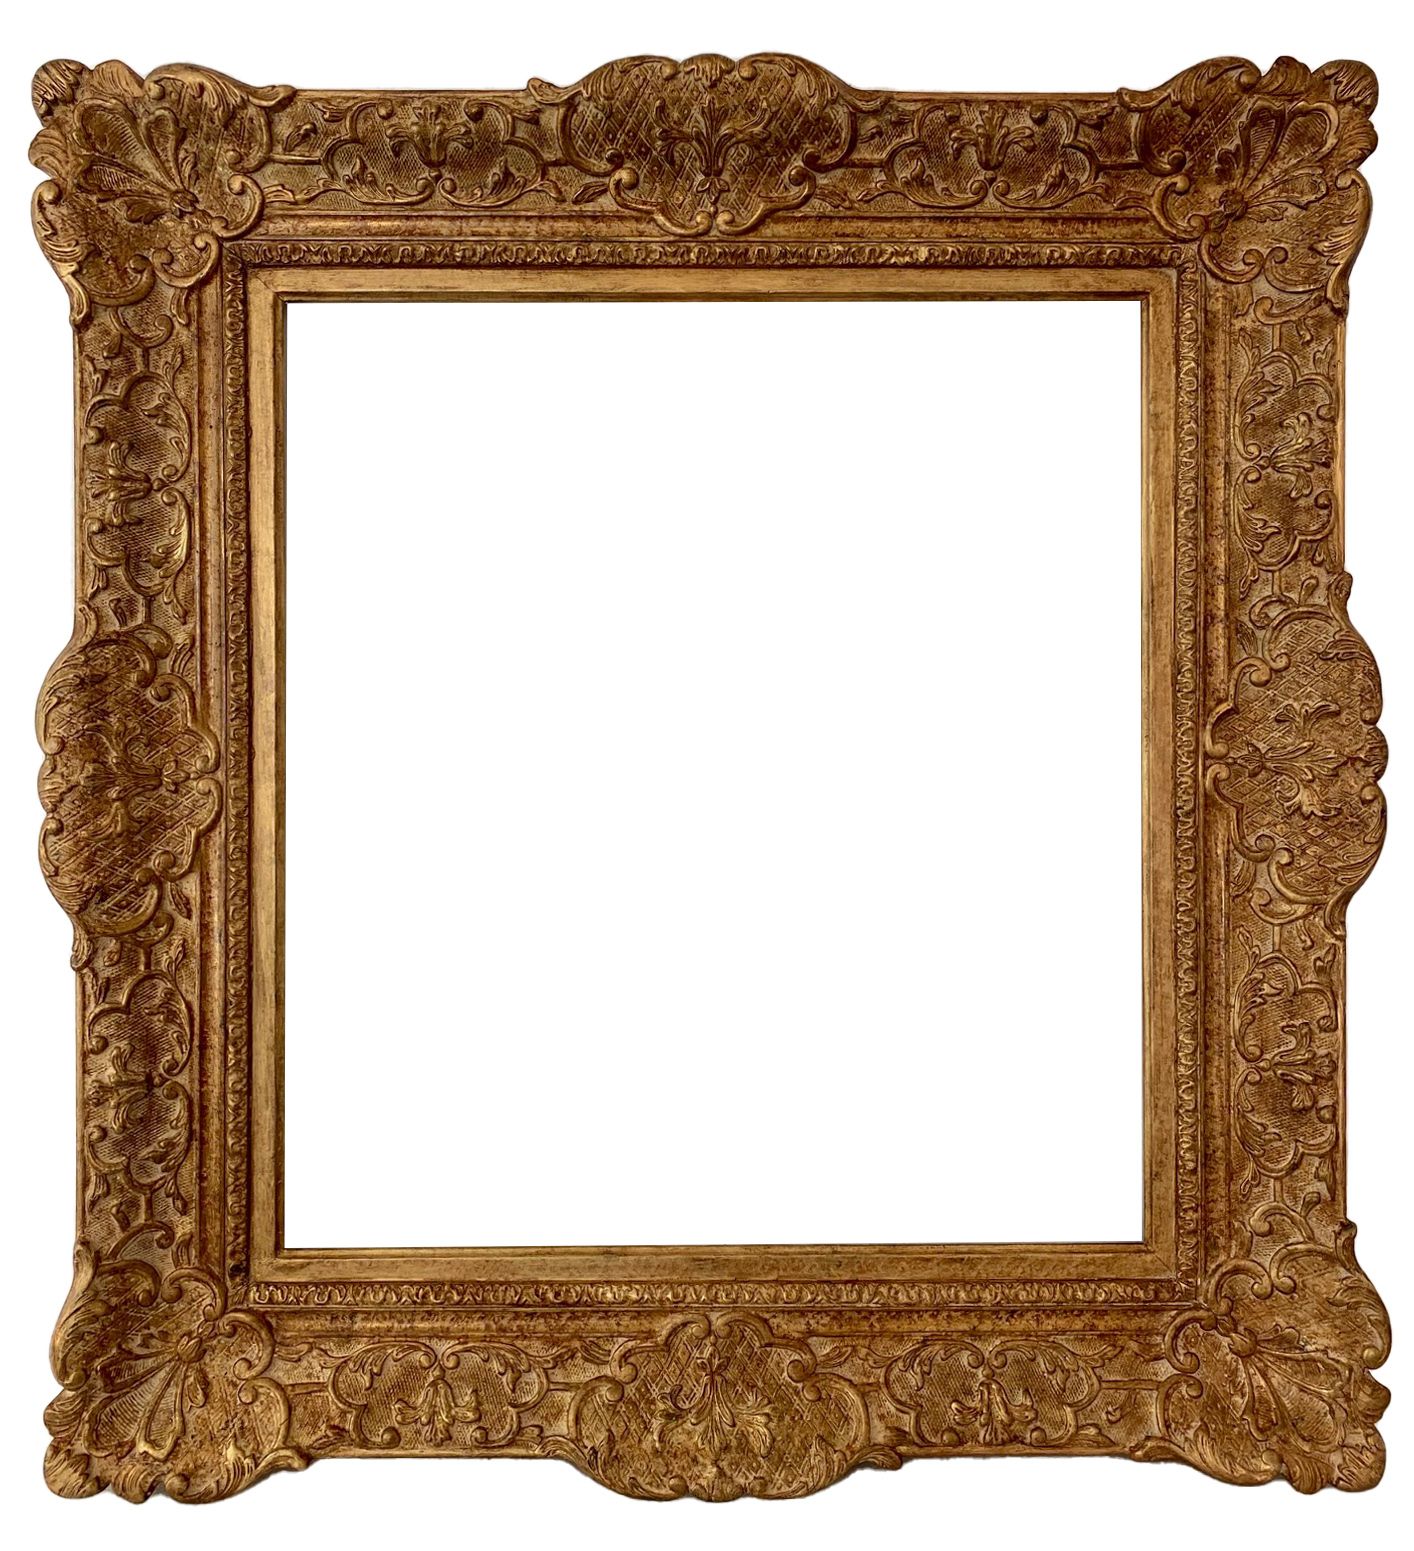 Cadre de style Louis XIV - 56,00 x 51,40 - REF - 1369